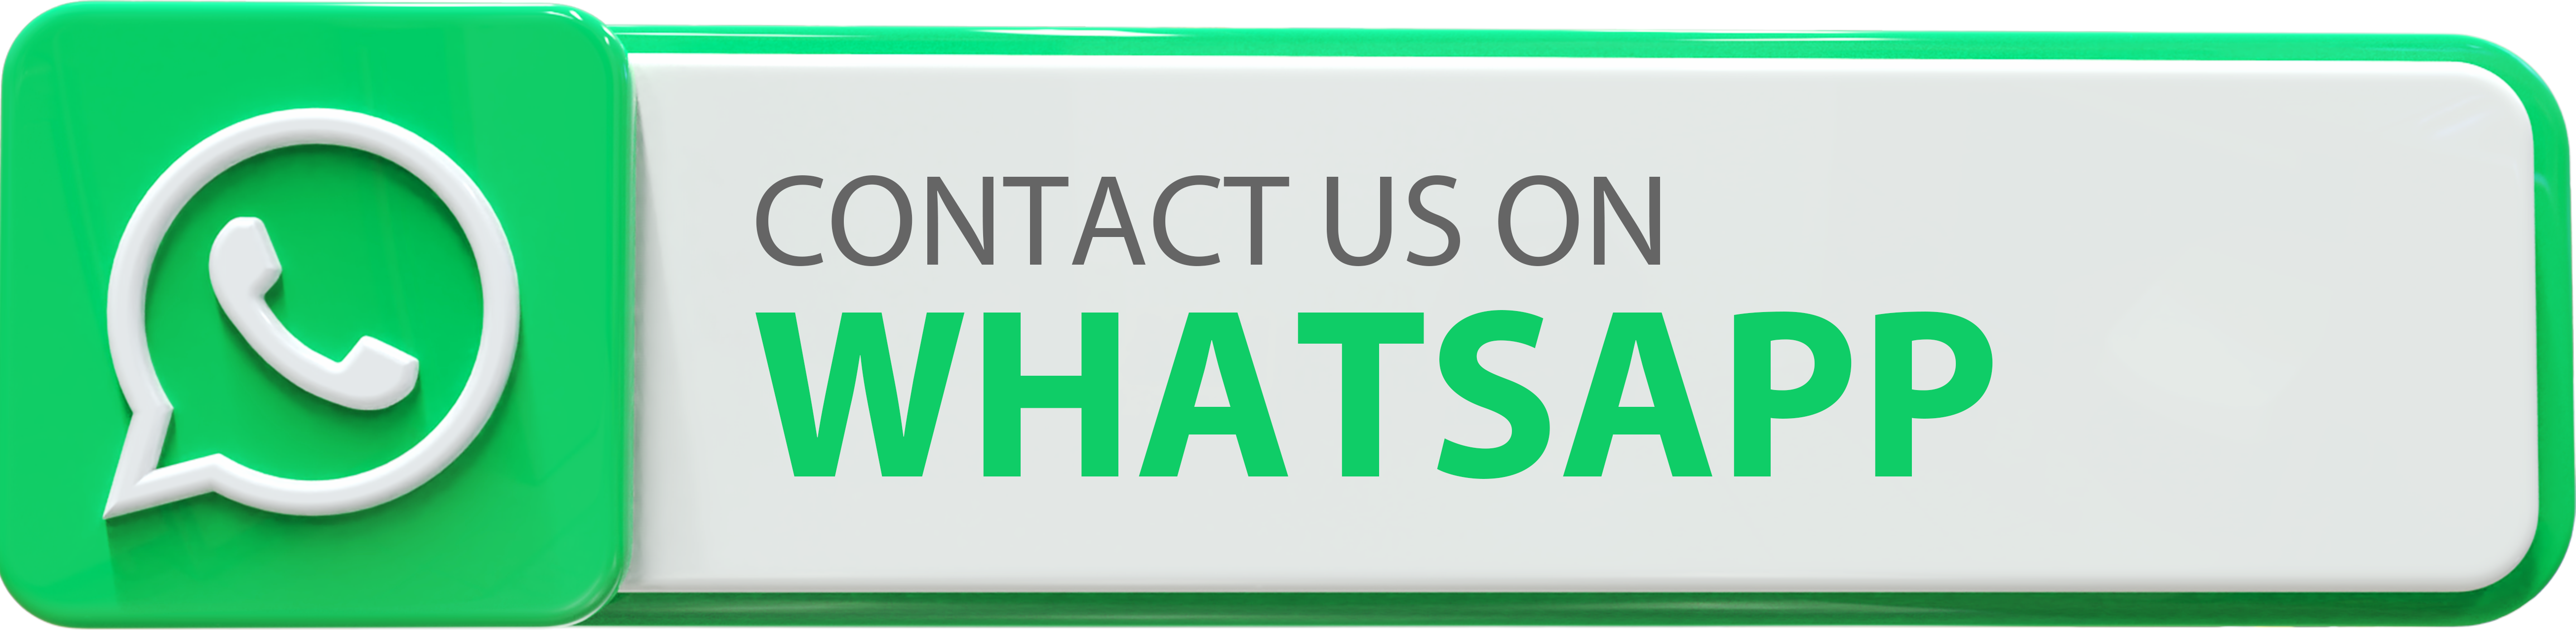 Whatsapp Button to Contact ATC